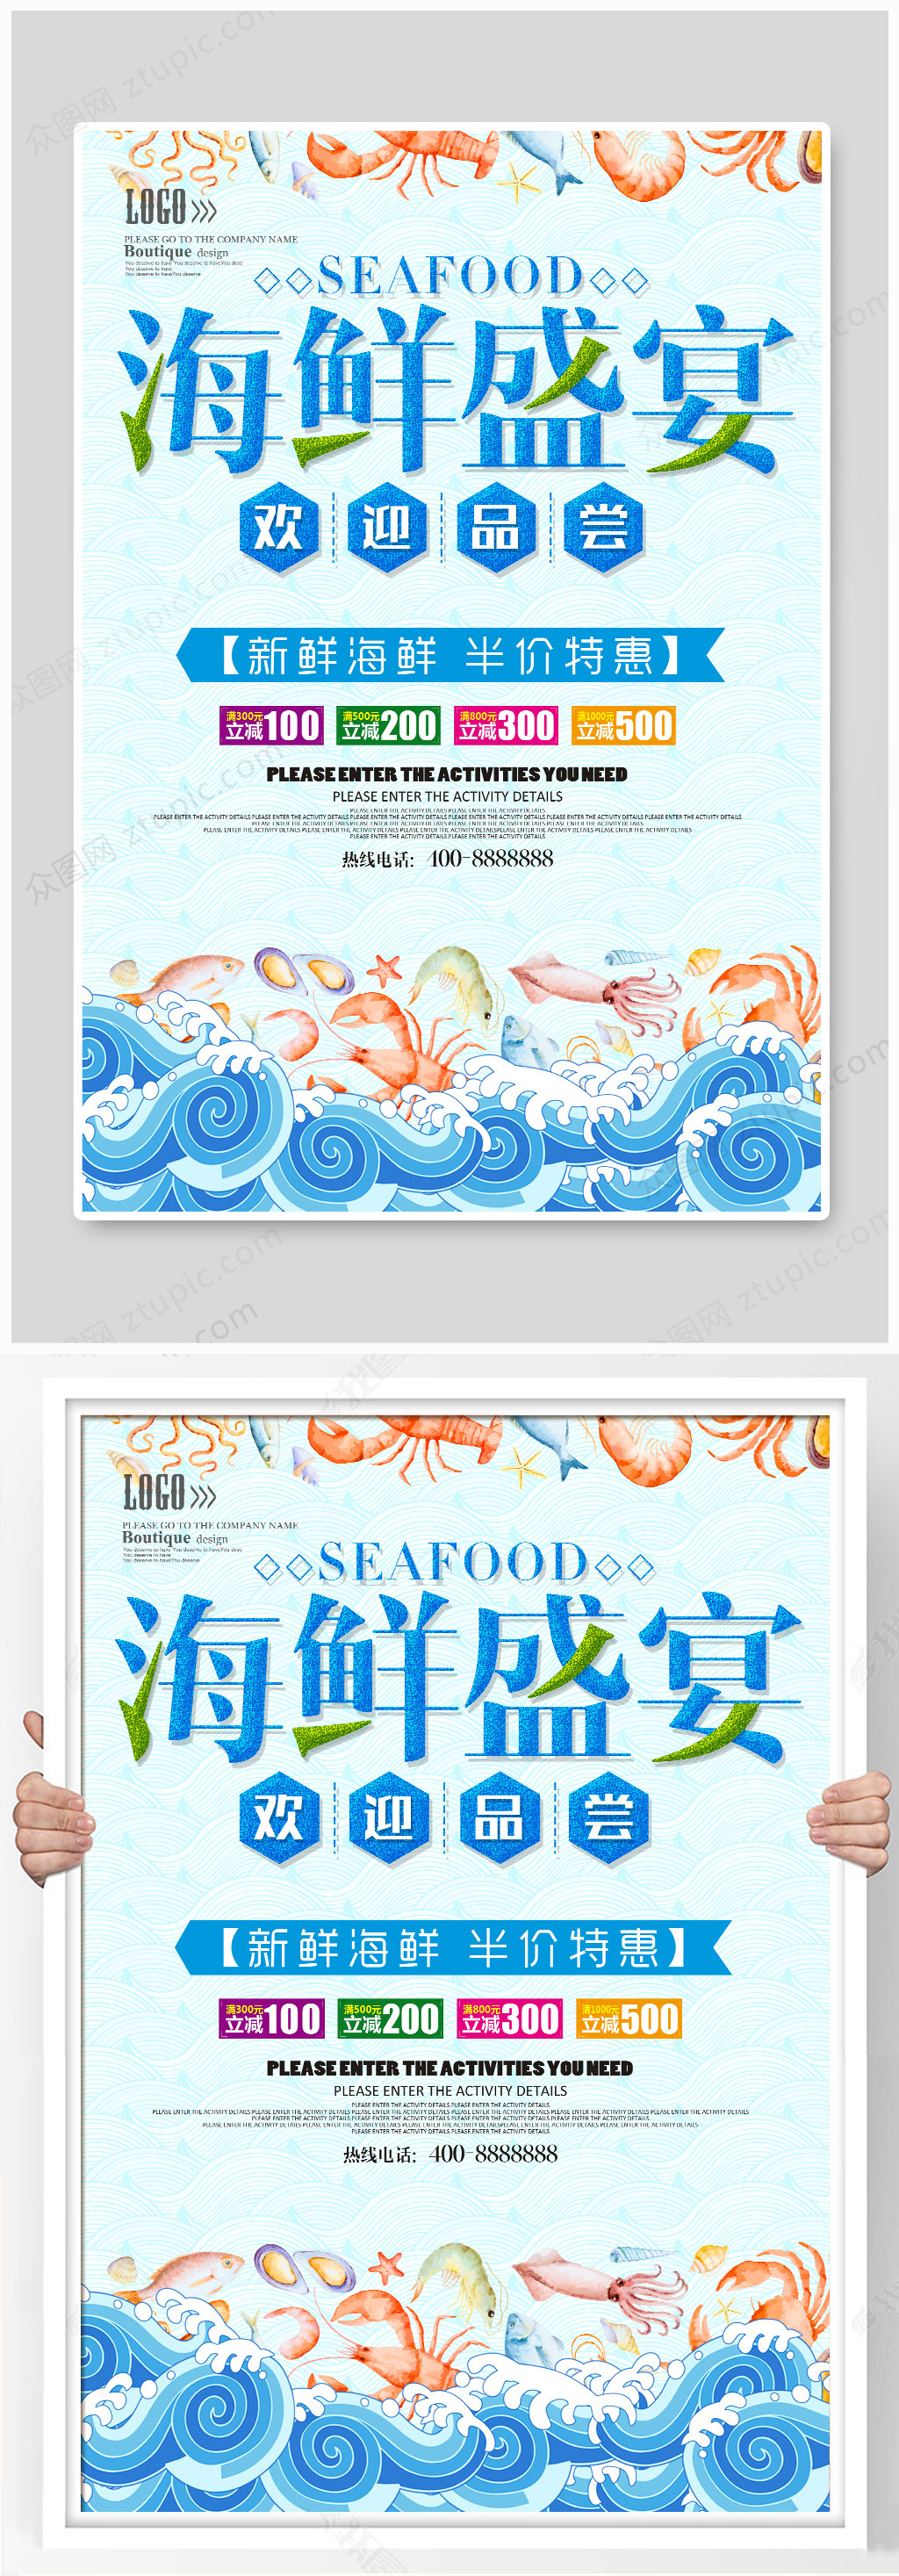 蓝色简洁海鲜盛宴海报设计